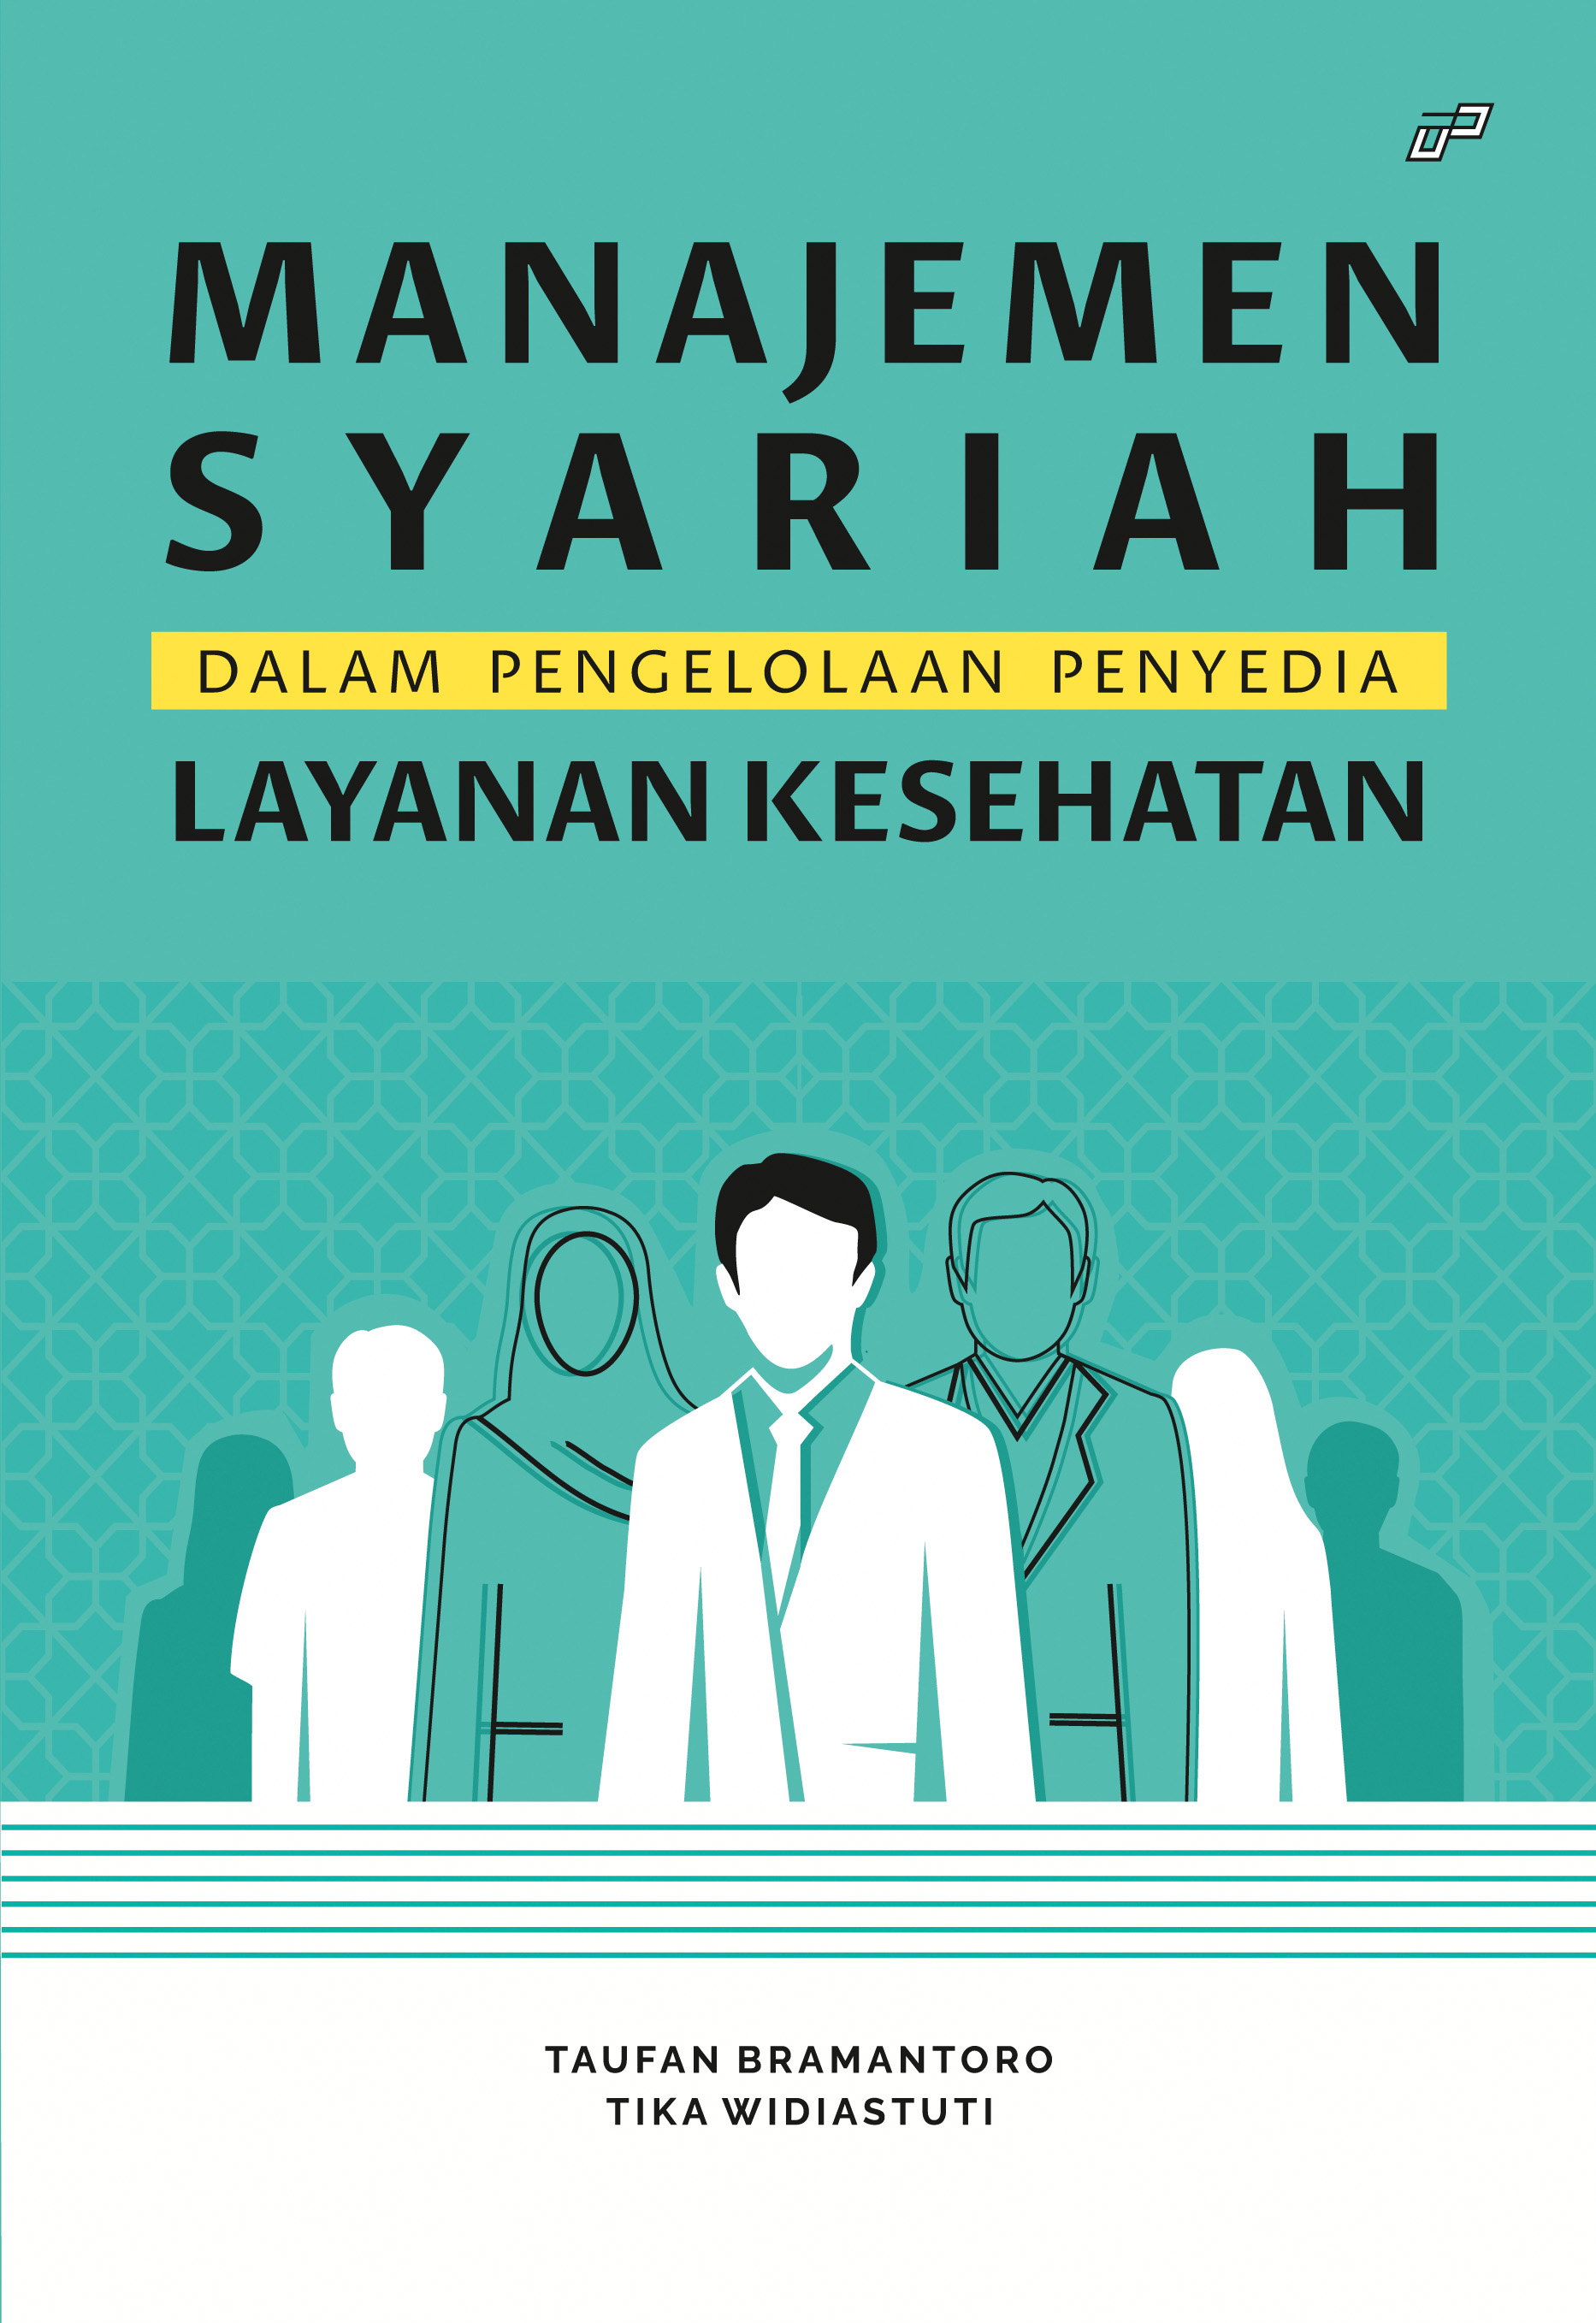 Manajemen syariah dalam pengelolaan penyedia layanan kesehatan [sumber elektronis]